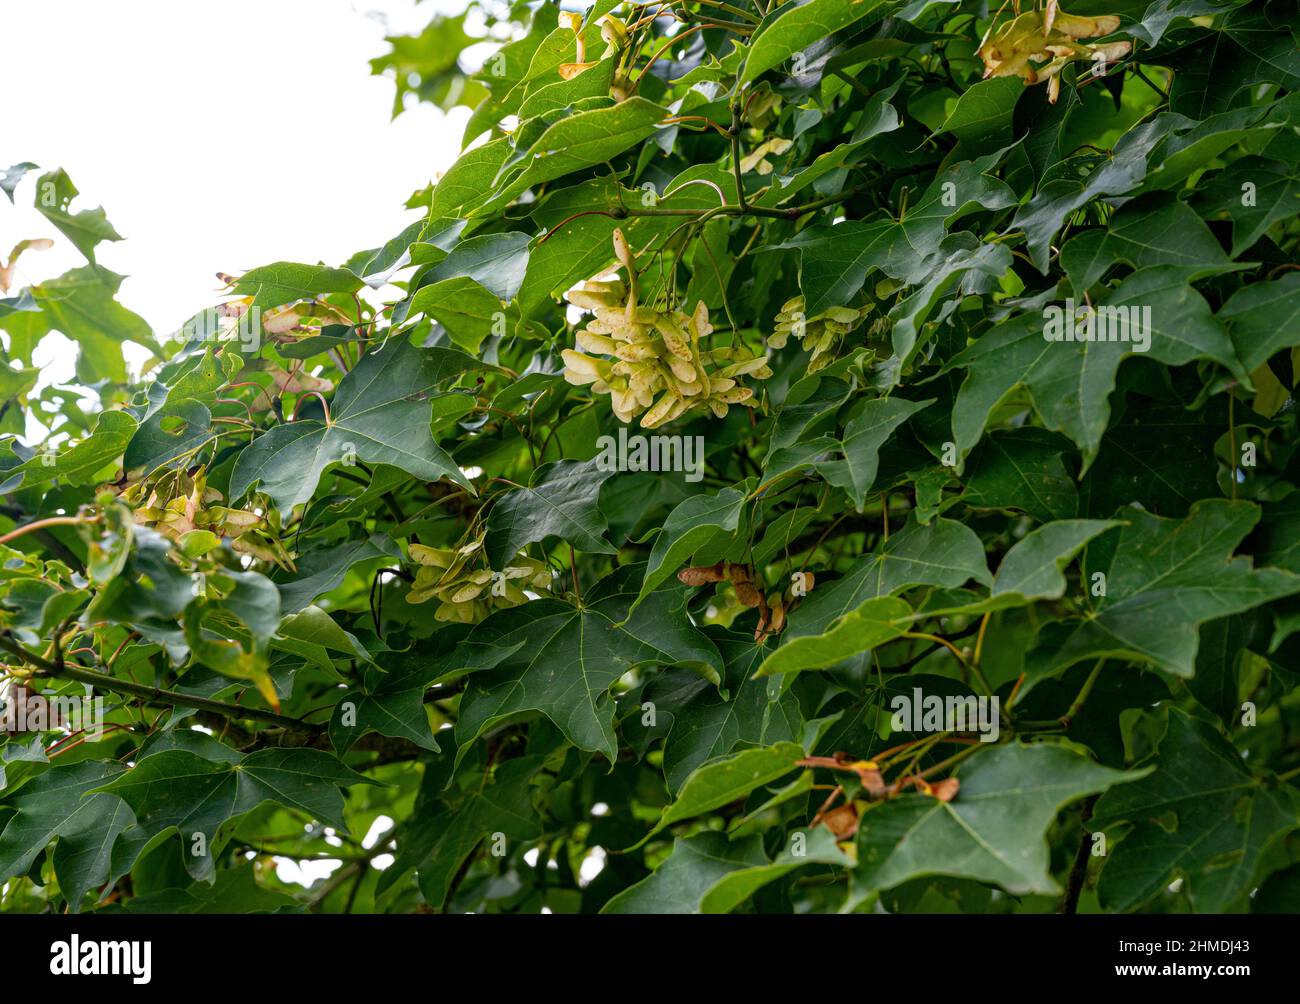 Acer cappadocicum, Acer laetum, acero Cappadocia, Acer colchicum, Sapindaceae. Foglie di acero a fine estate, con semi pod formatisi. Foto Stock